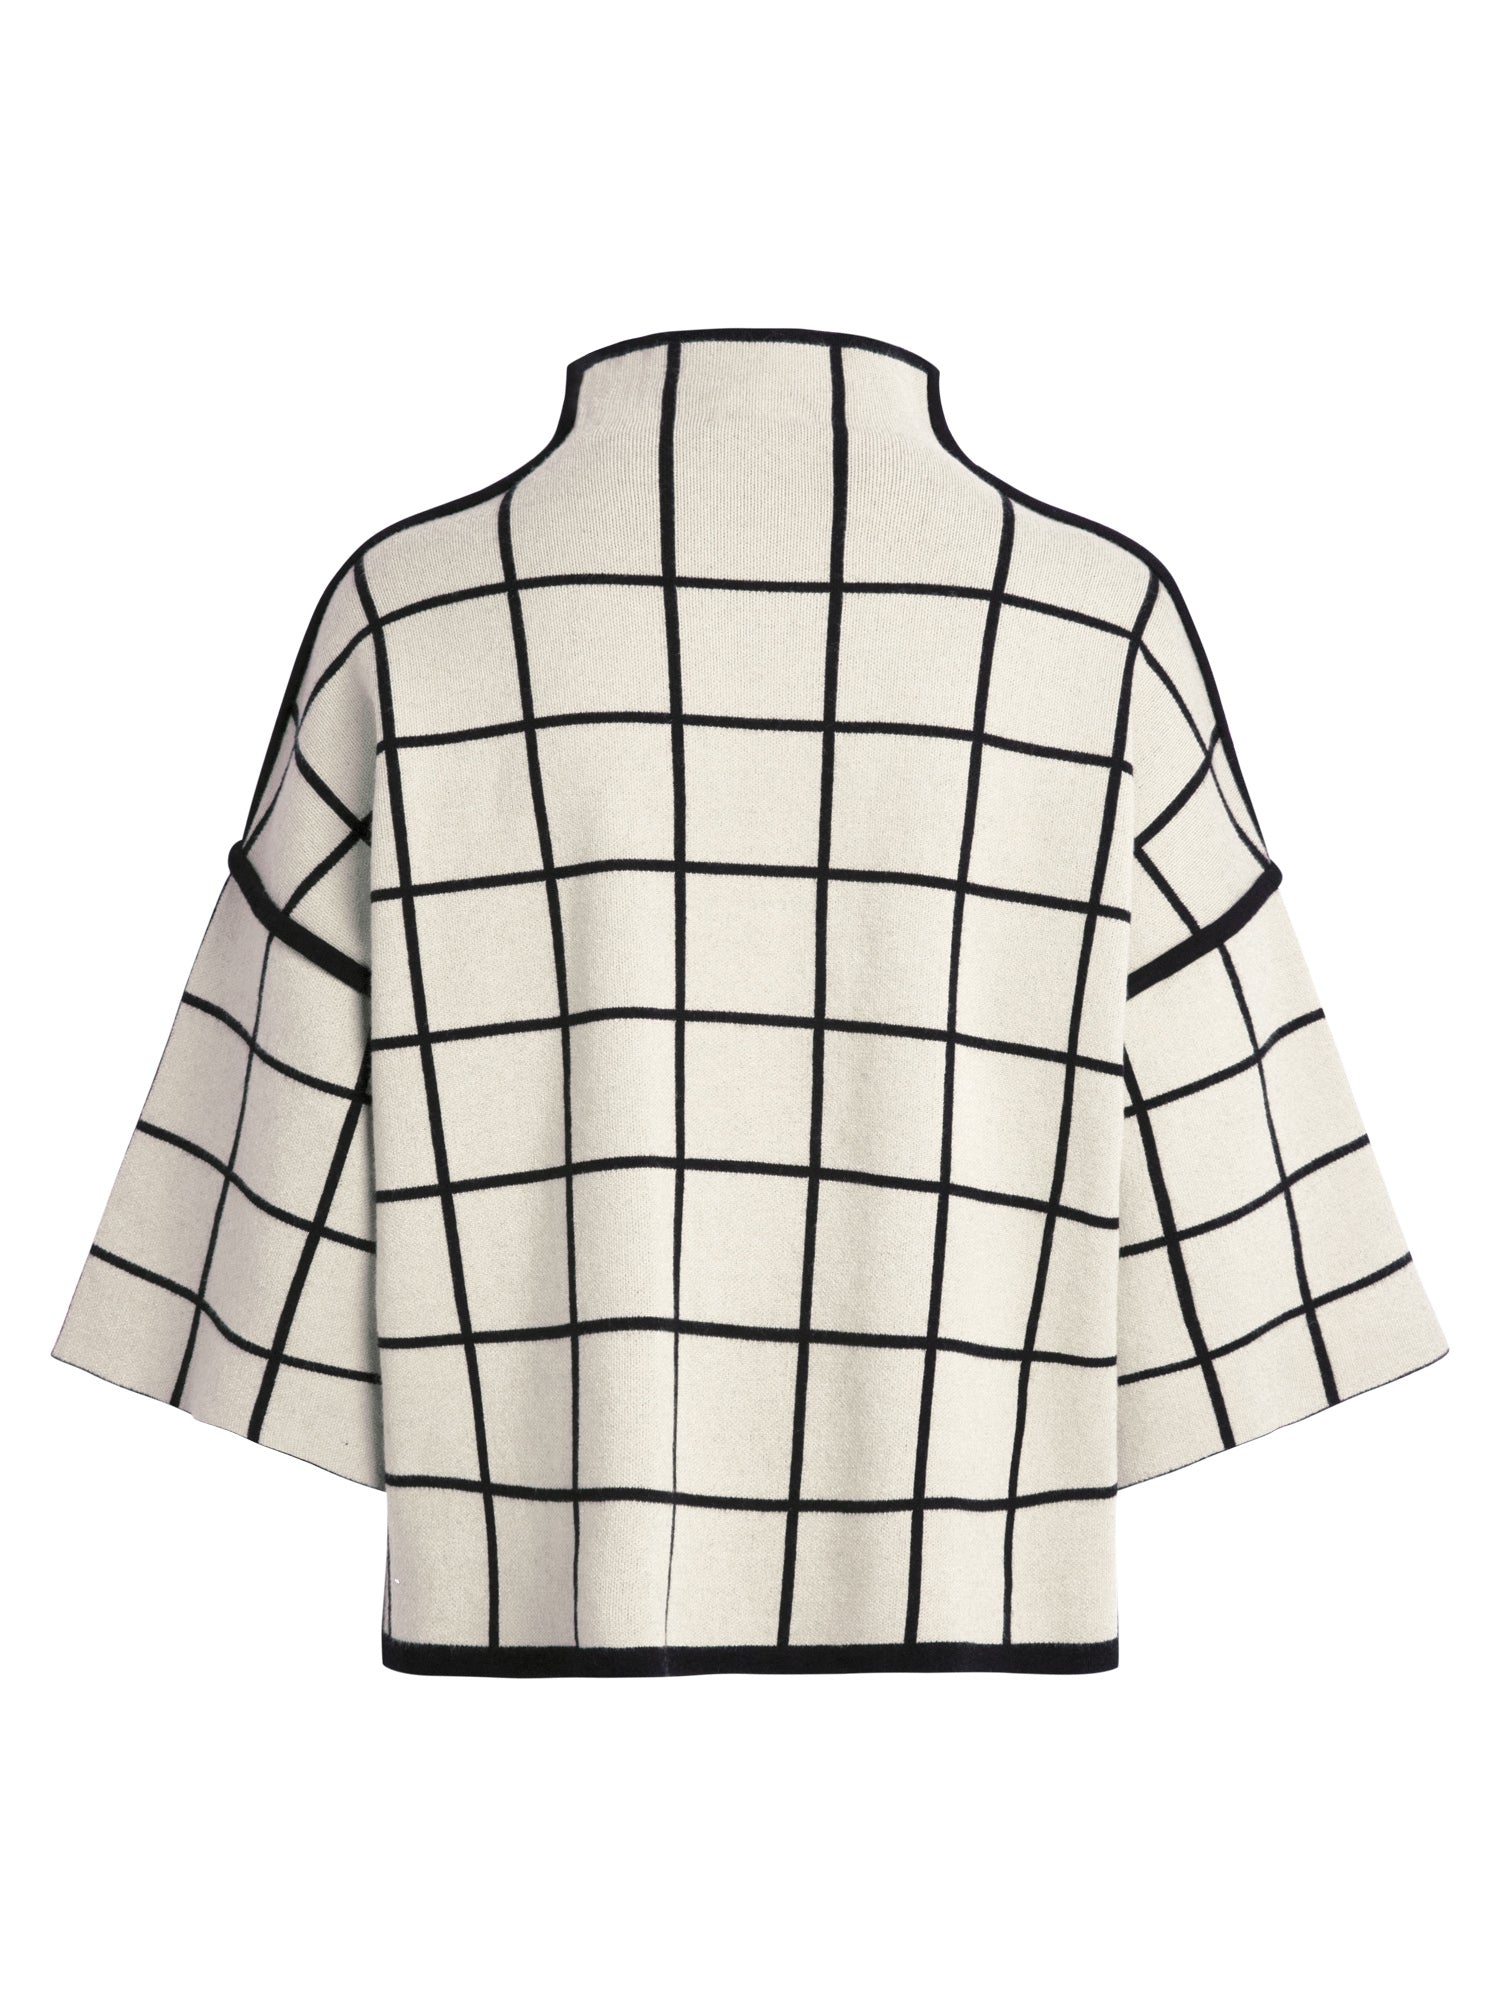 APART topmodischer Pullover, extravagant, kurze kastige Form, weite 3/4-lange Ärmel | beige-black